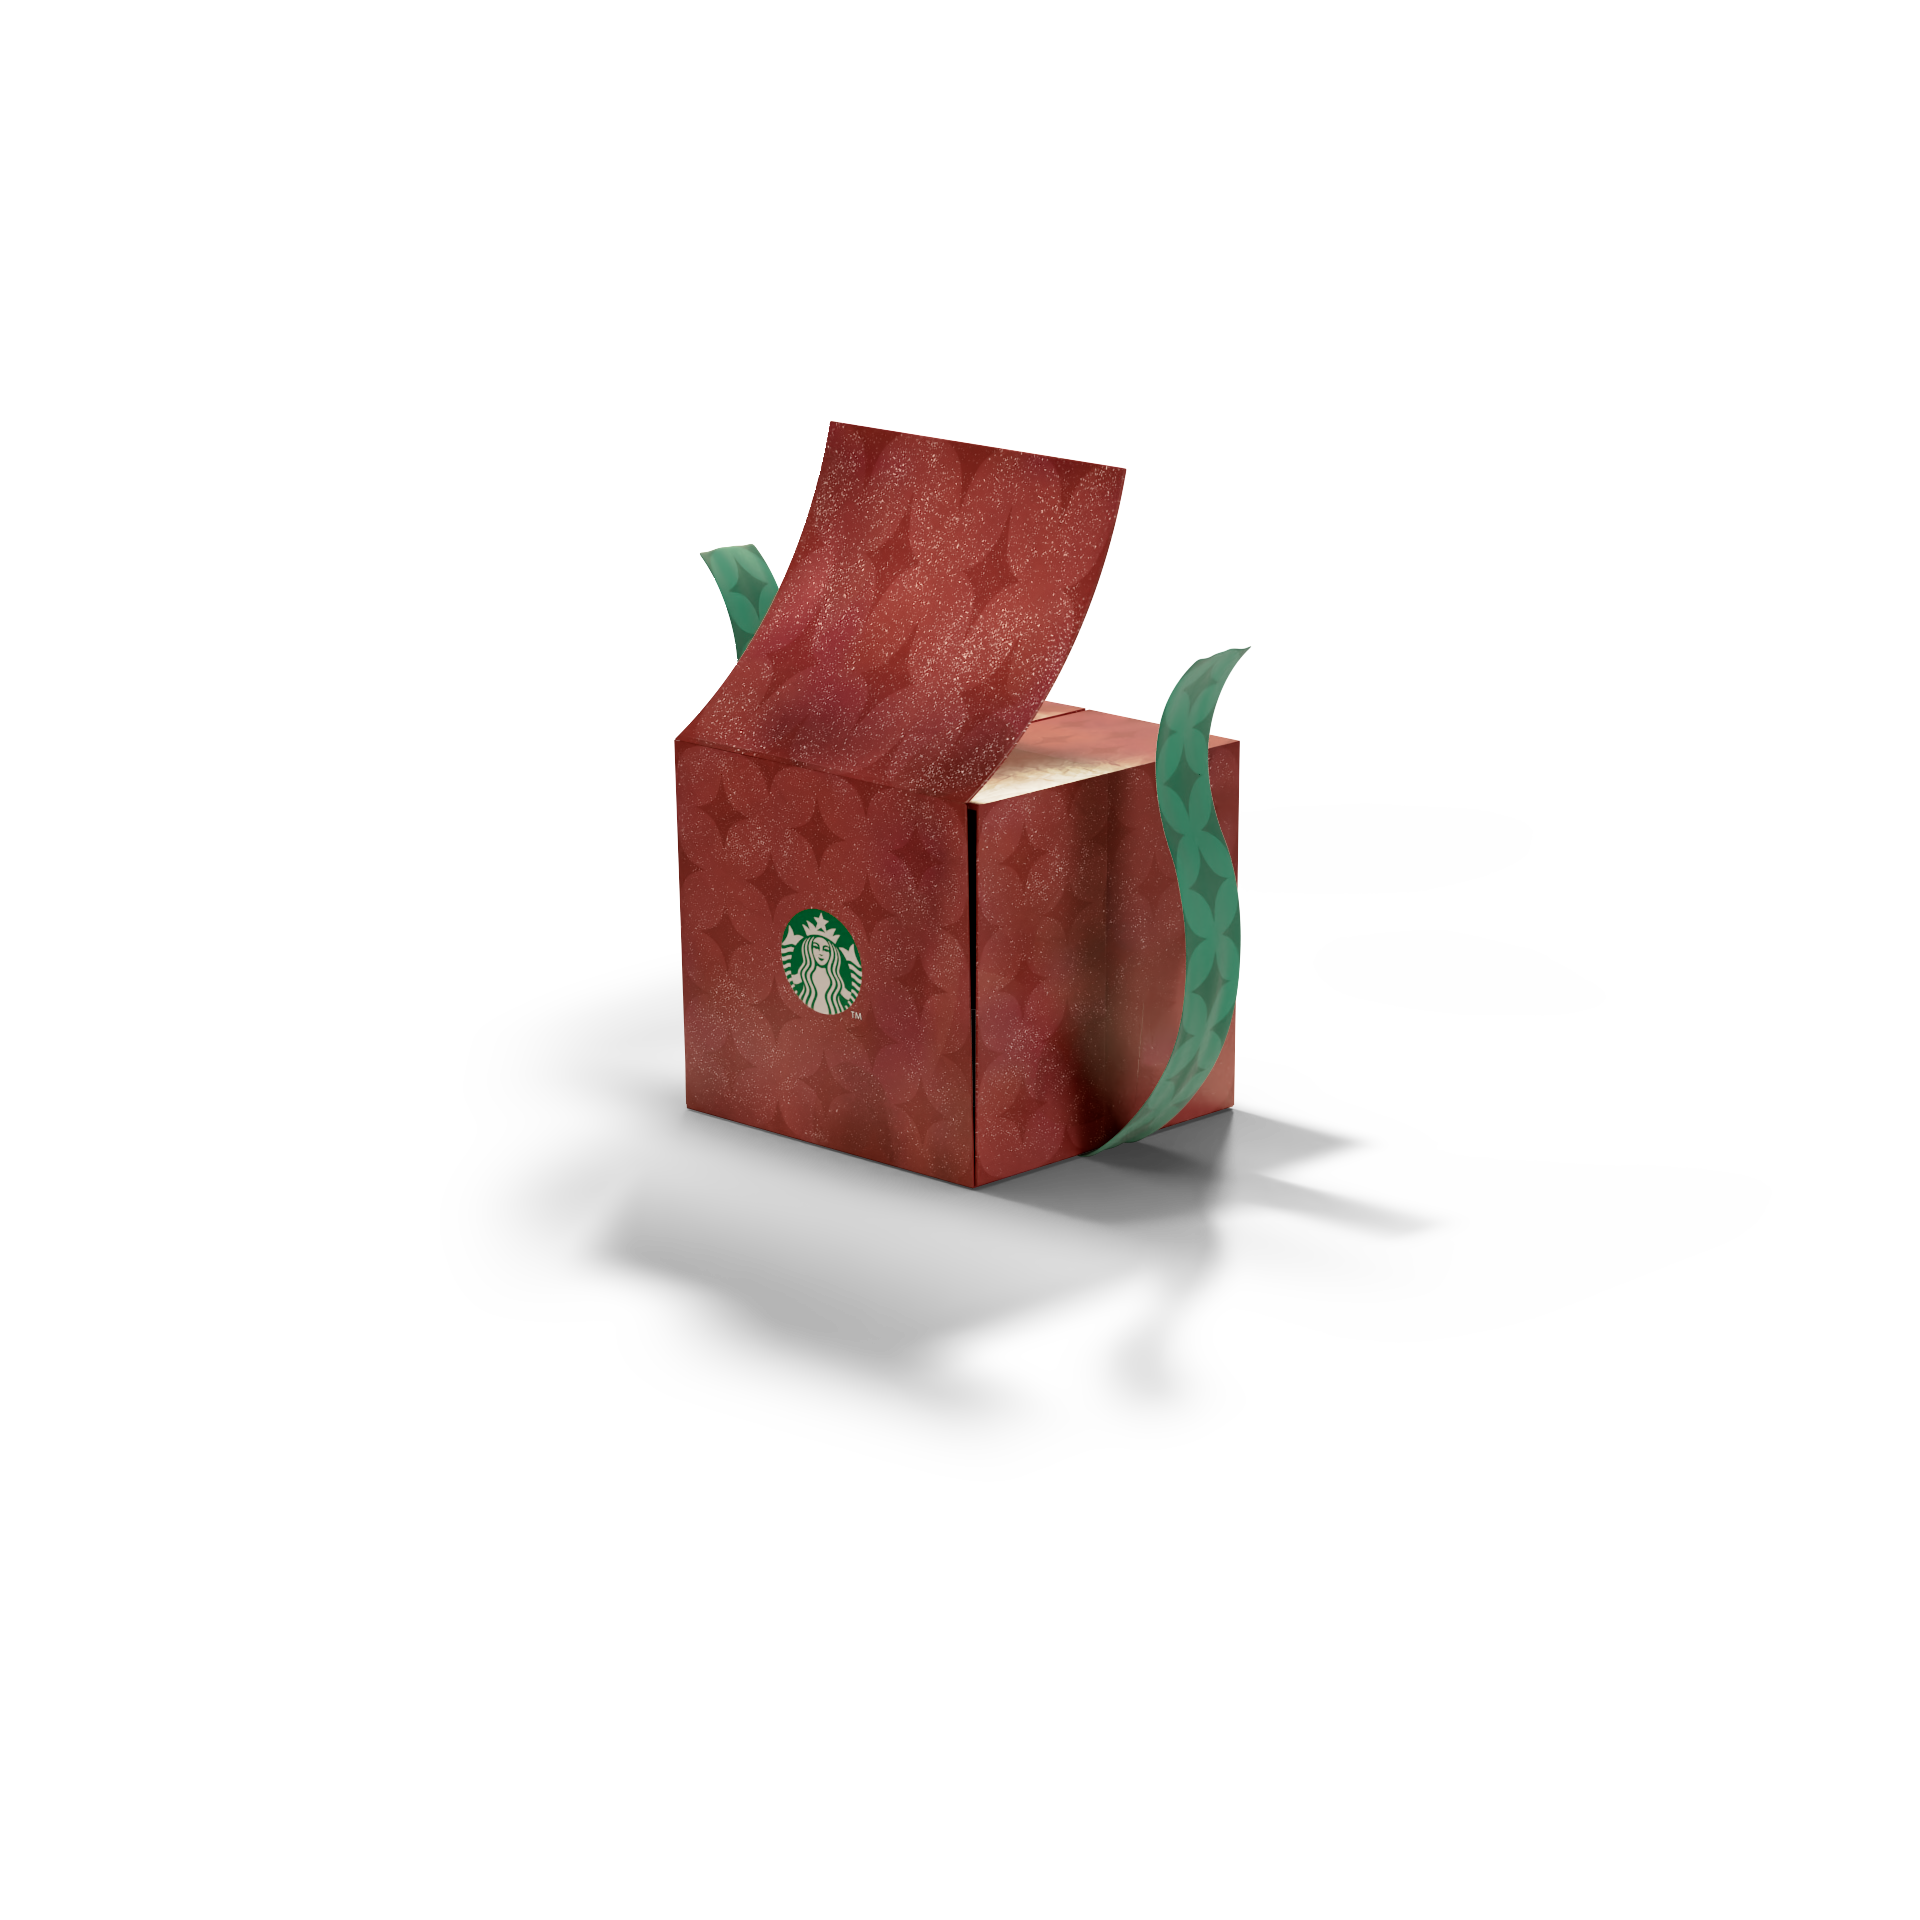 holiday box